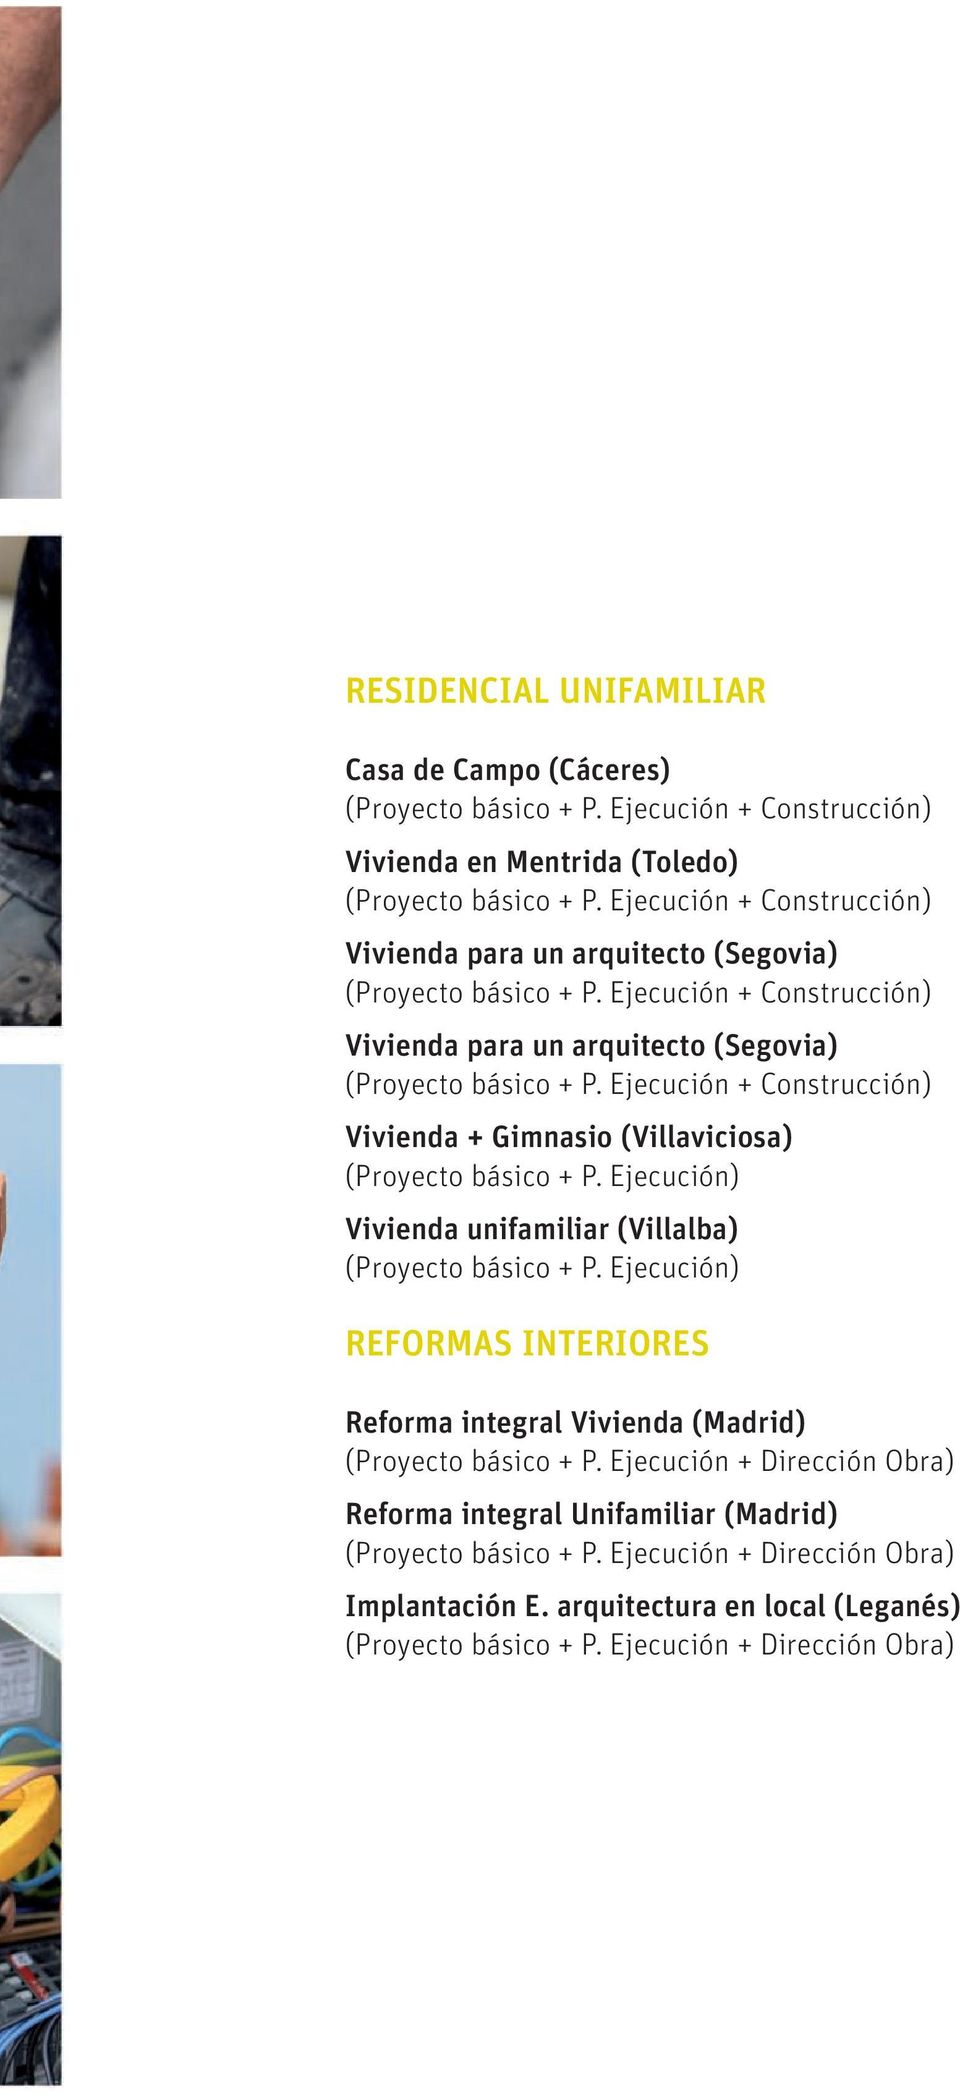 Ejecución + Construcción) Vivienda para un arquitecto (Segovia) (Proyecto básico + P.